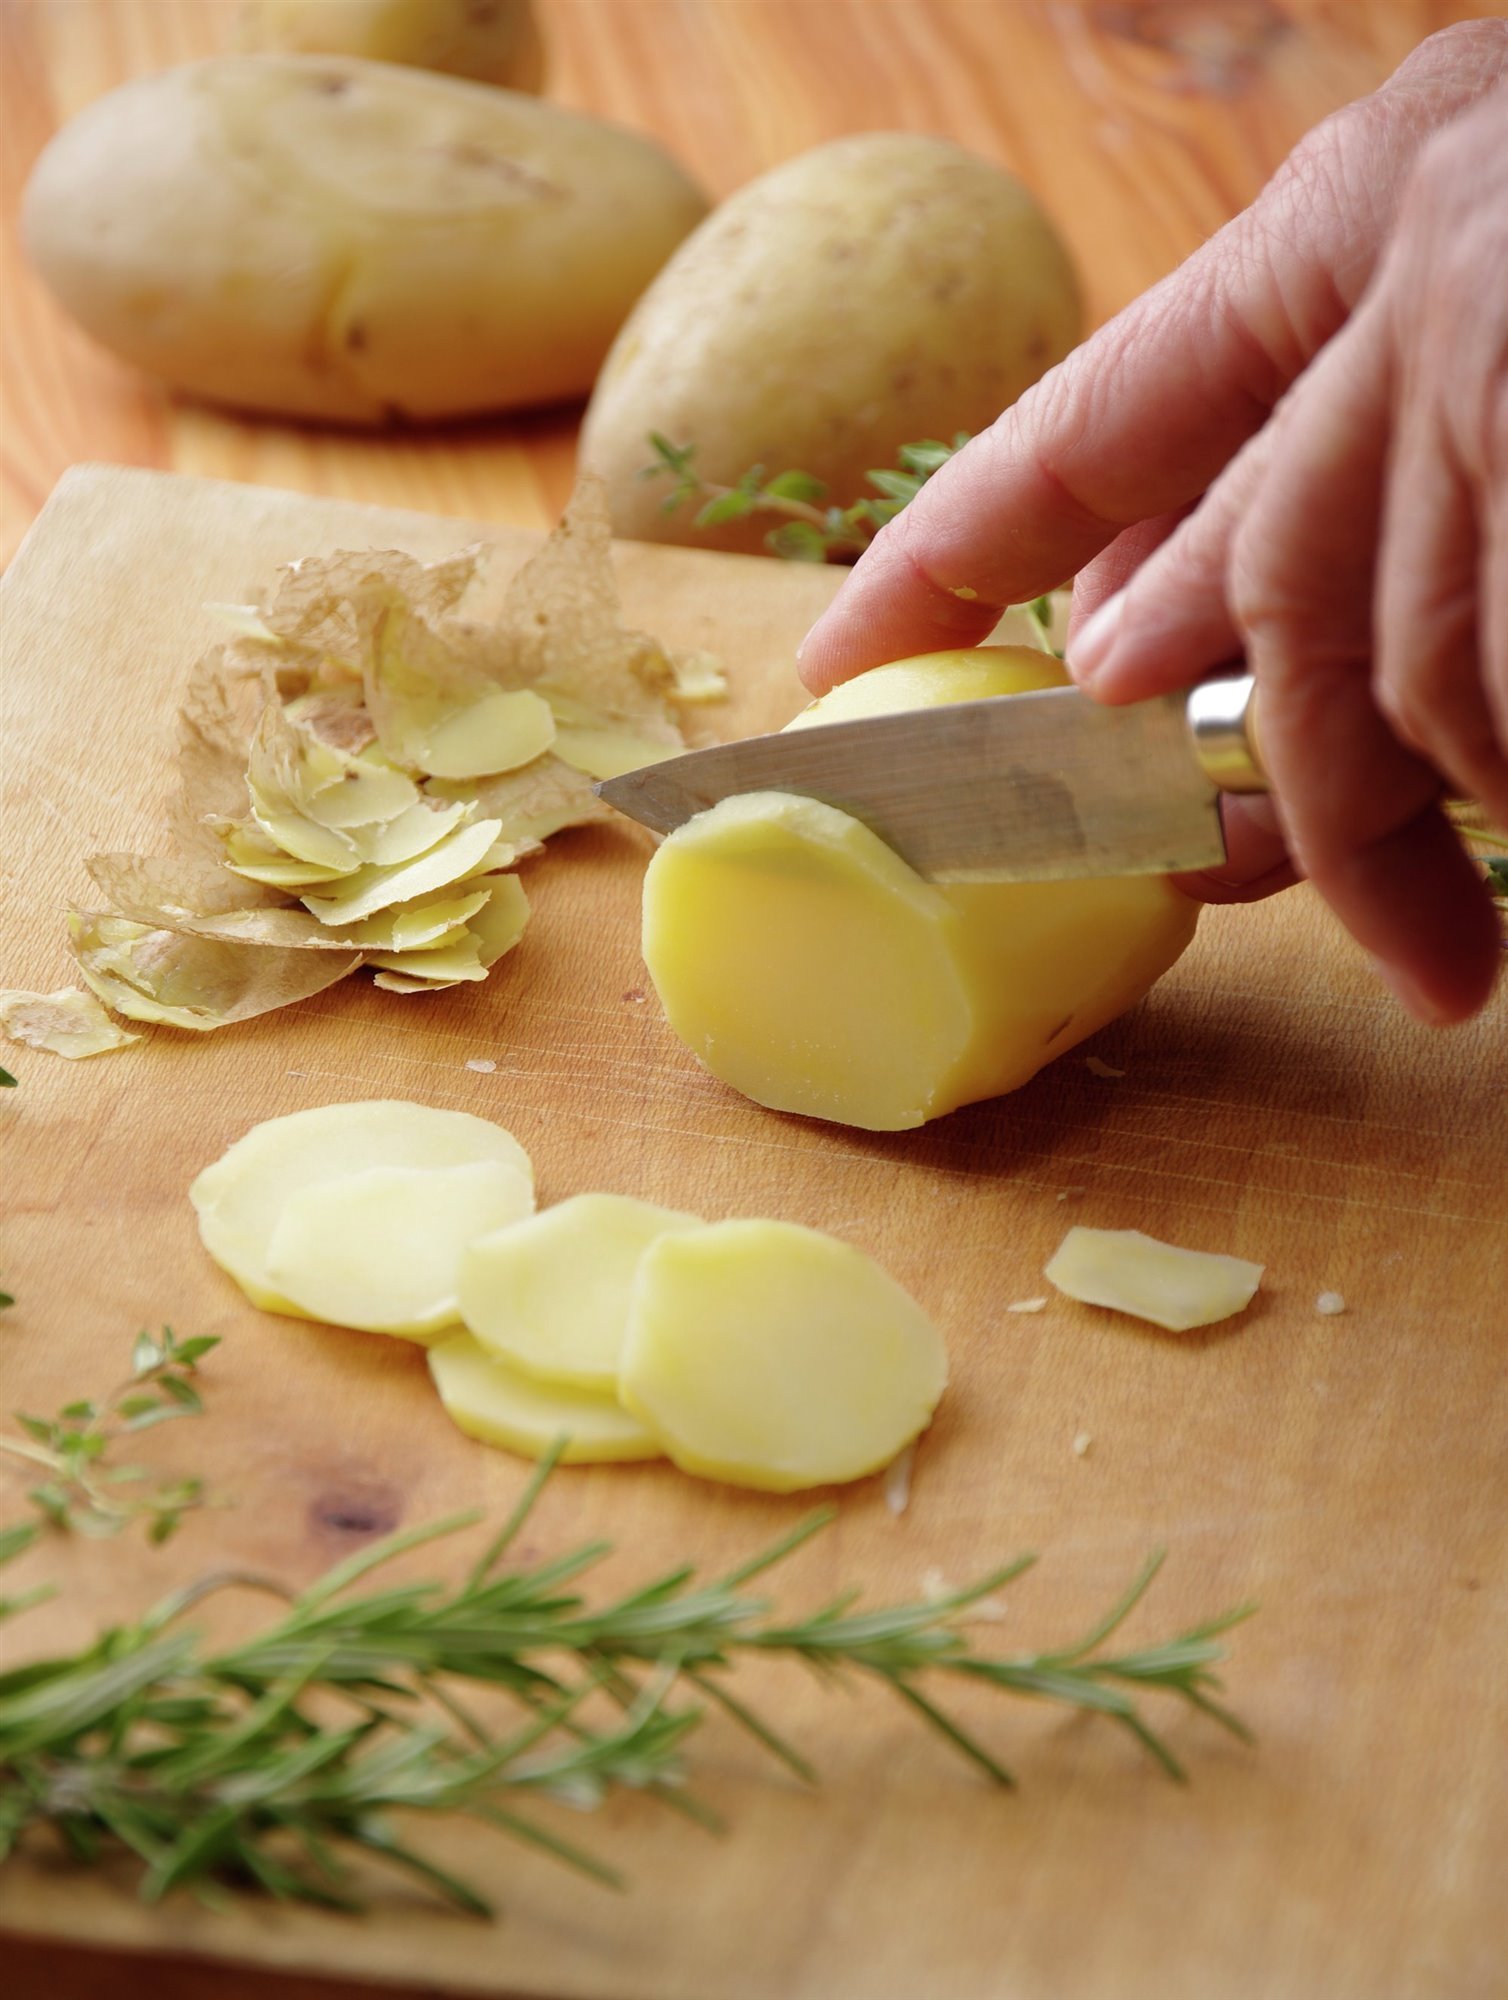 1. Corta y cuece las patatas